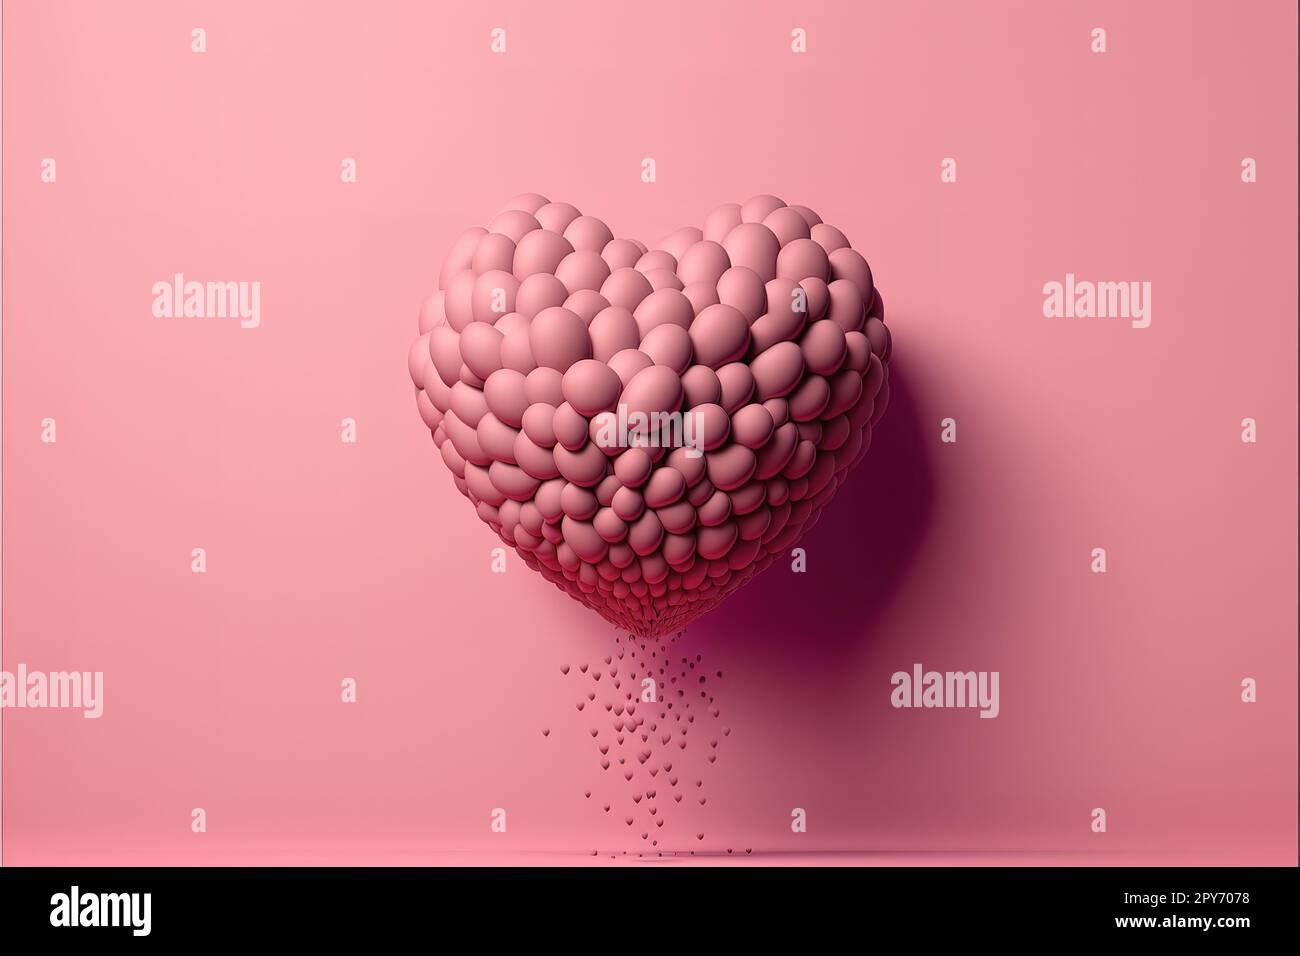 Herzform aus rosafarbenem Ballon auf pinkfarbenem Hintergrund Stockfoto